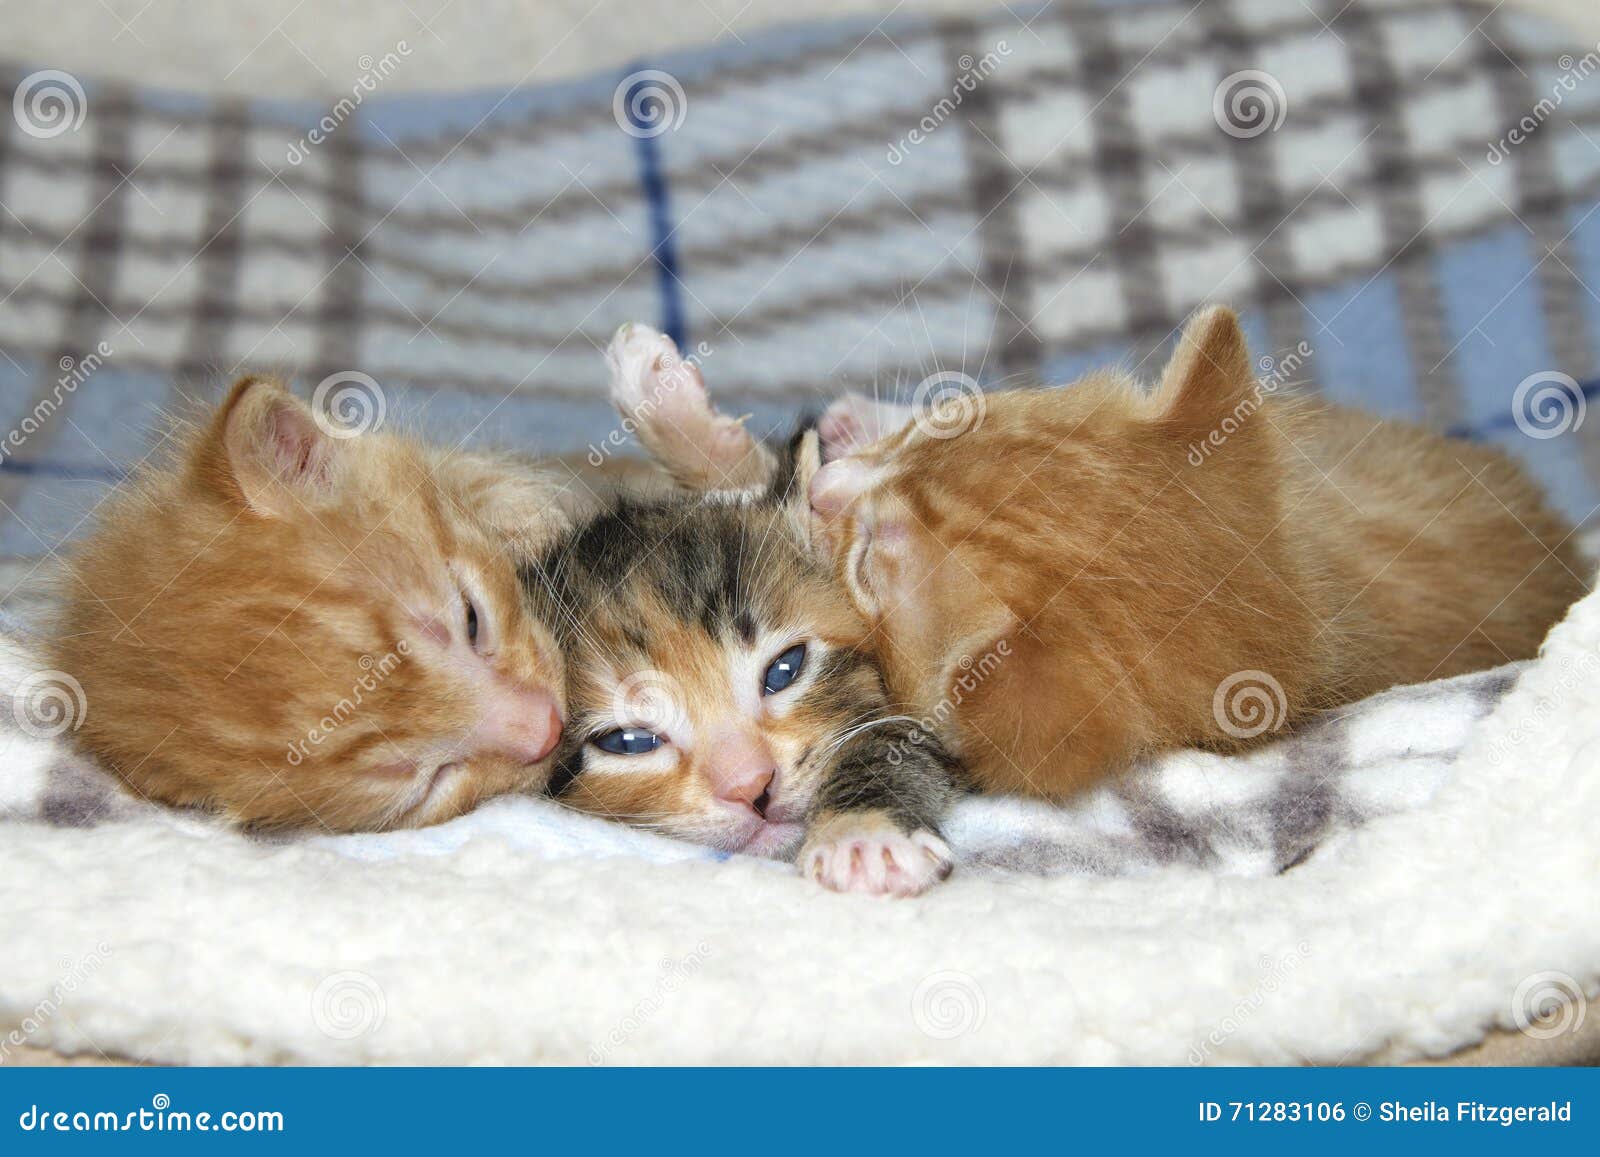 Two Tiny Tabby  Kittens  Stock Photo CartoonDealer com 